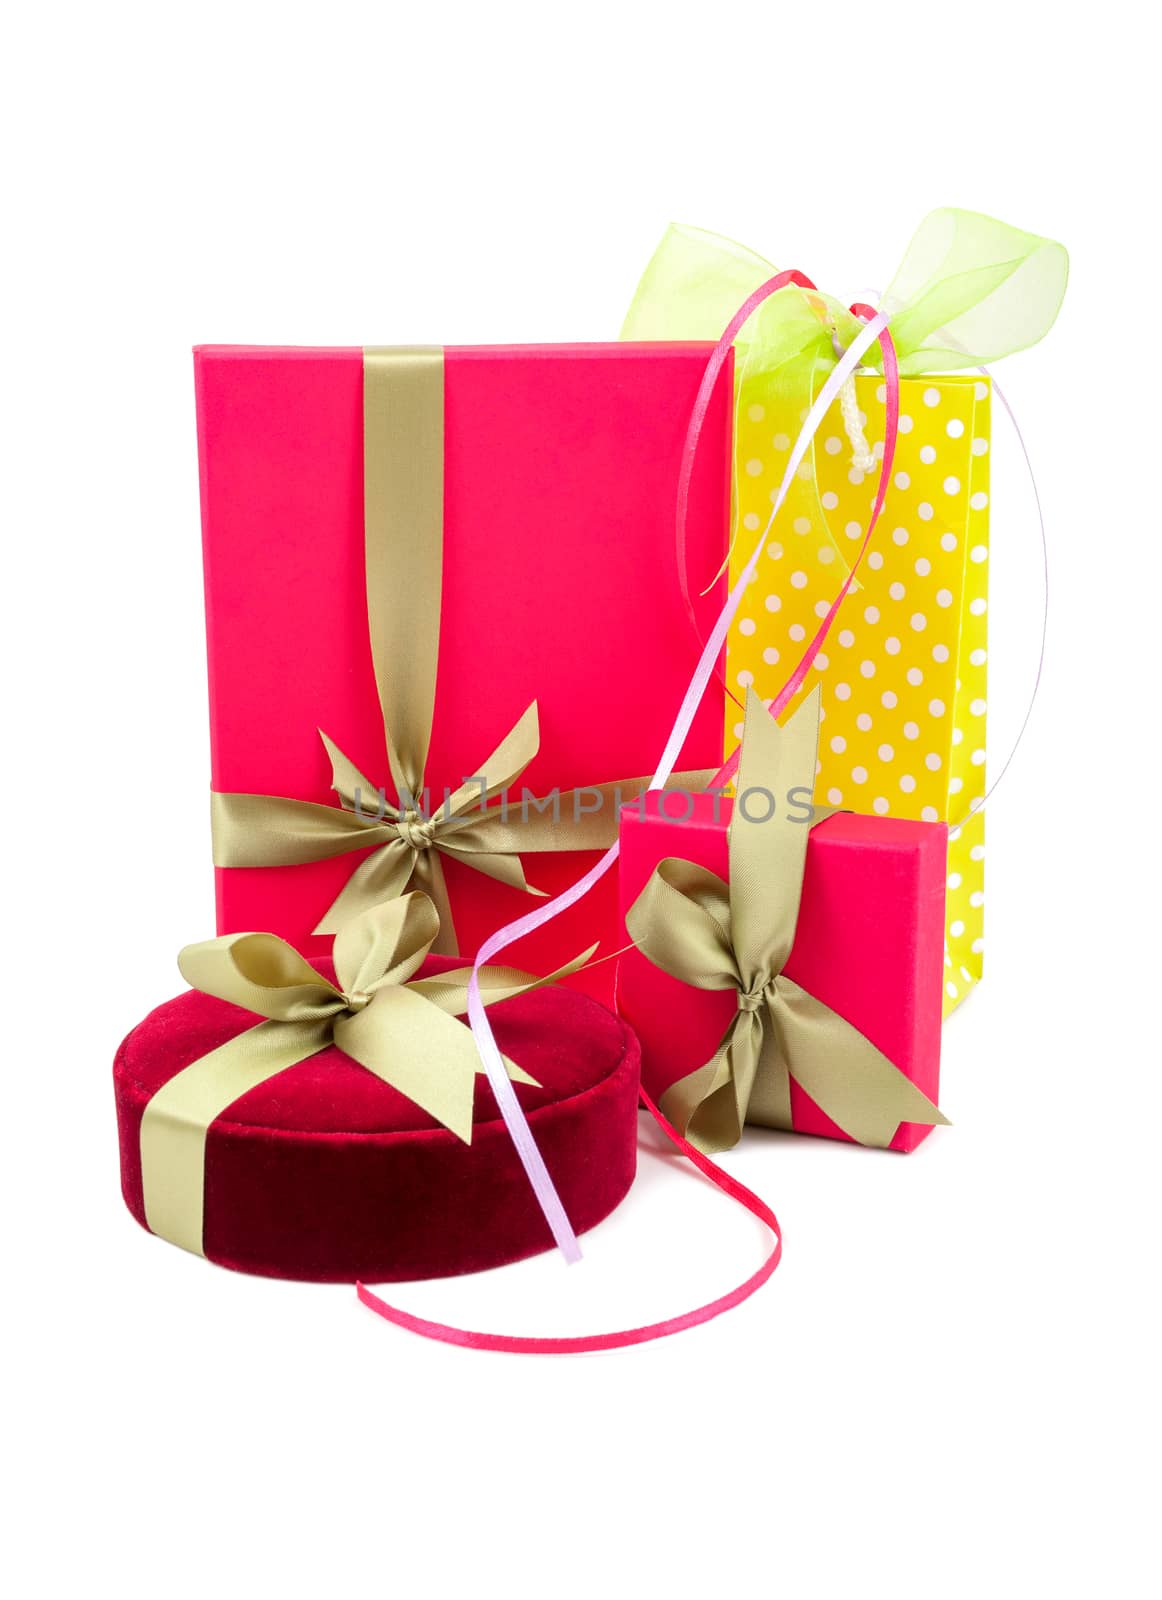 Luxury gift boxes by Portokalis